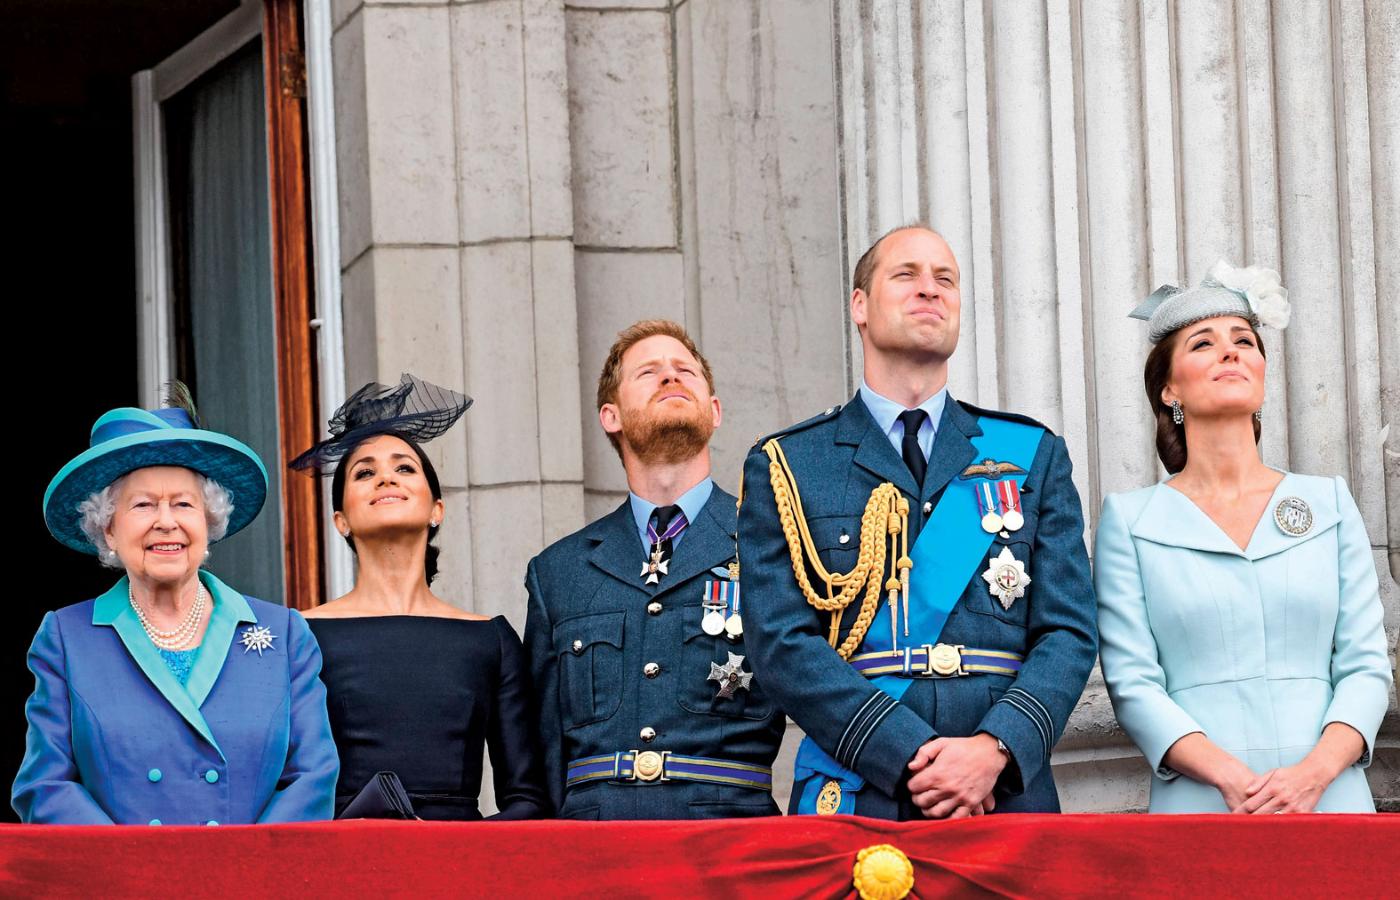 Elżbieta II z młodszym pokoleniem  brytyjskiej rodziny królewskiej: księżną Meghan, księciem Harrym, księciem Williamem i księżną Kate.